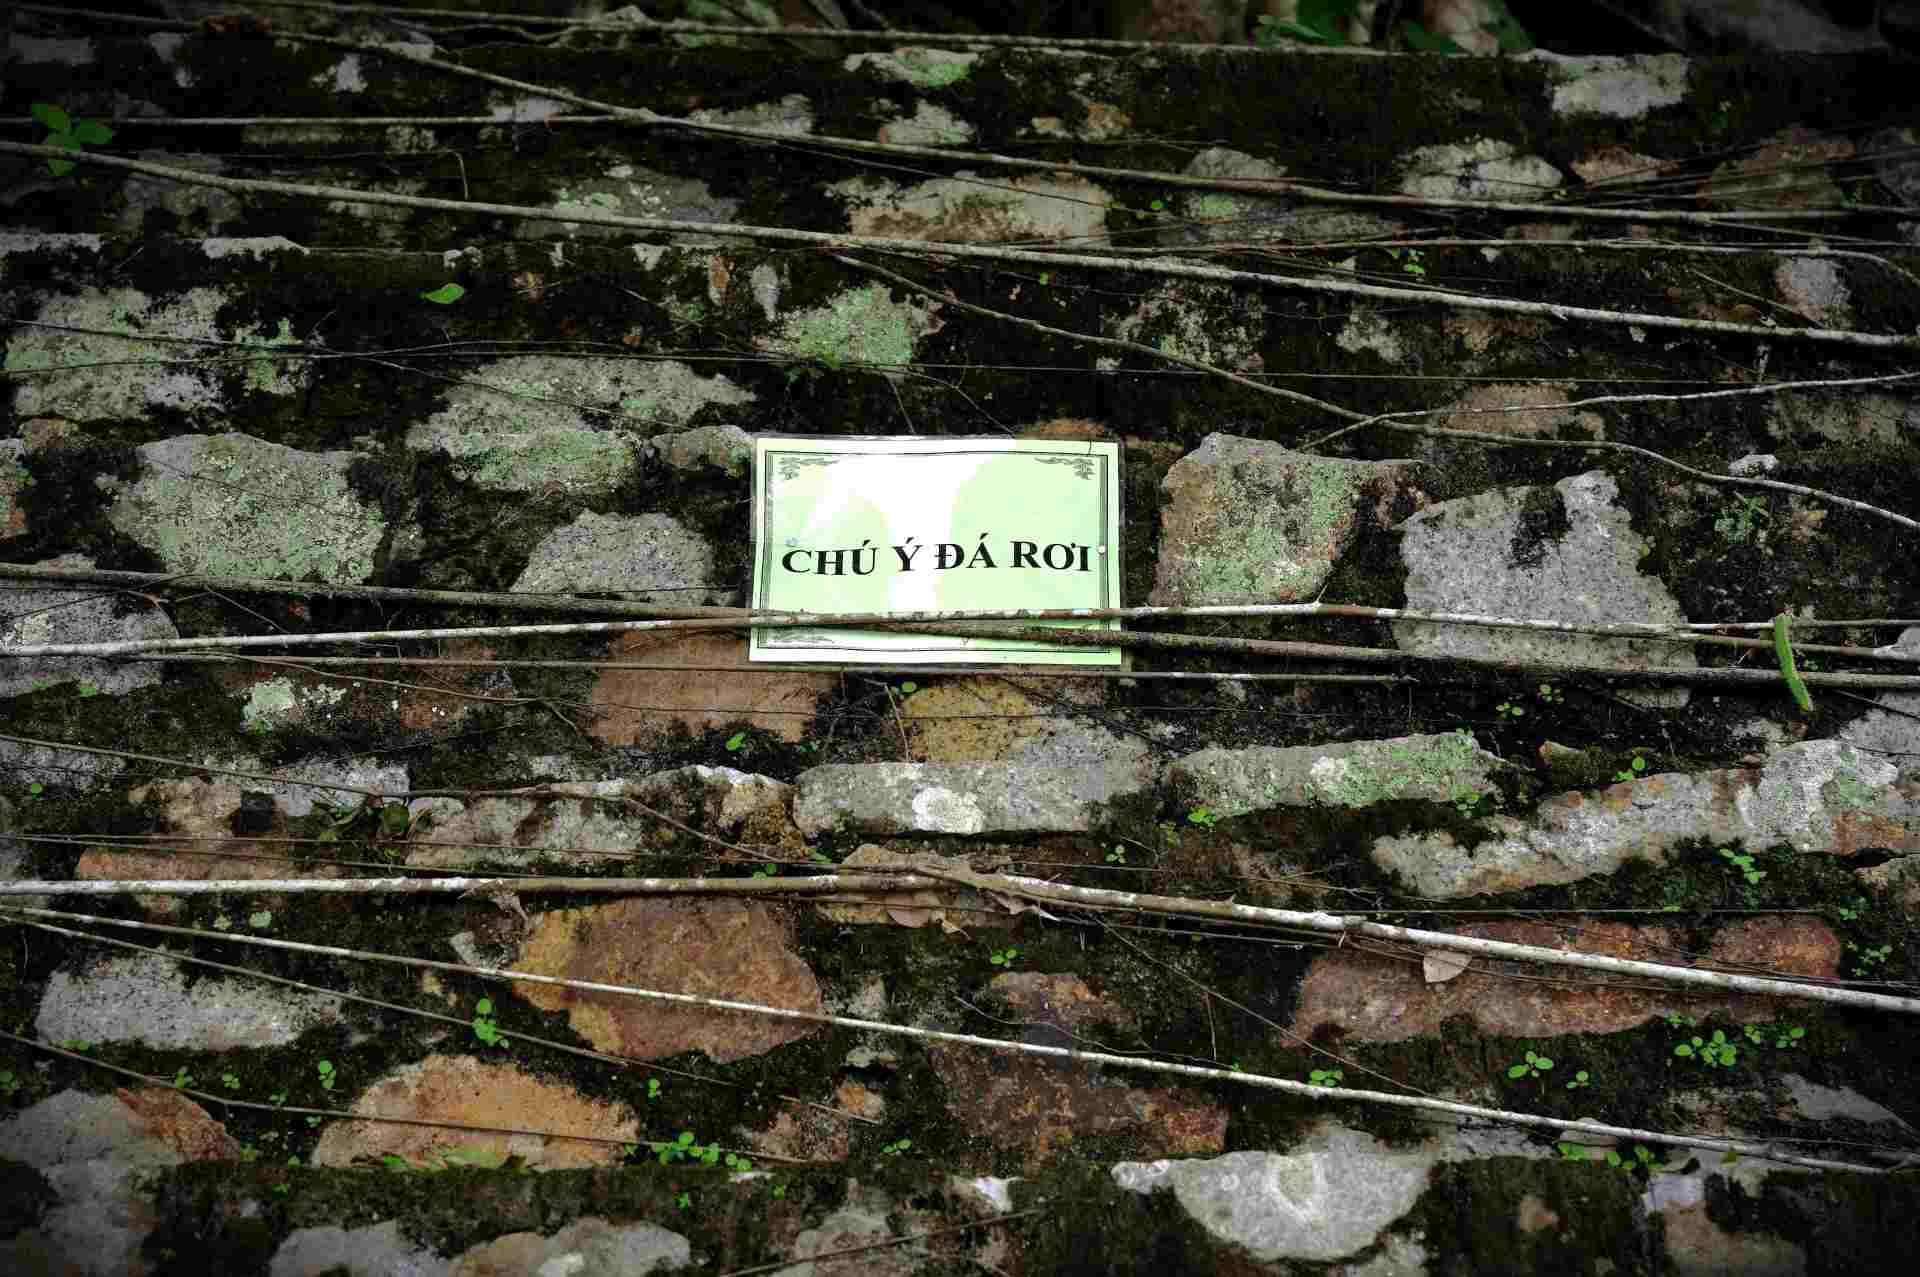  Nhiều biển hiệu cảnh báo nguy hiểm đá lở lắp đặt nhiều nơi trong khuôn viên Điện. 